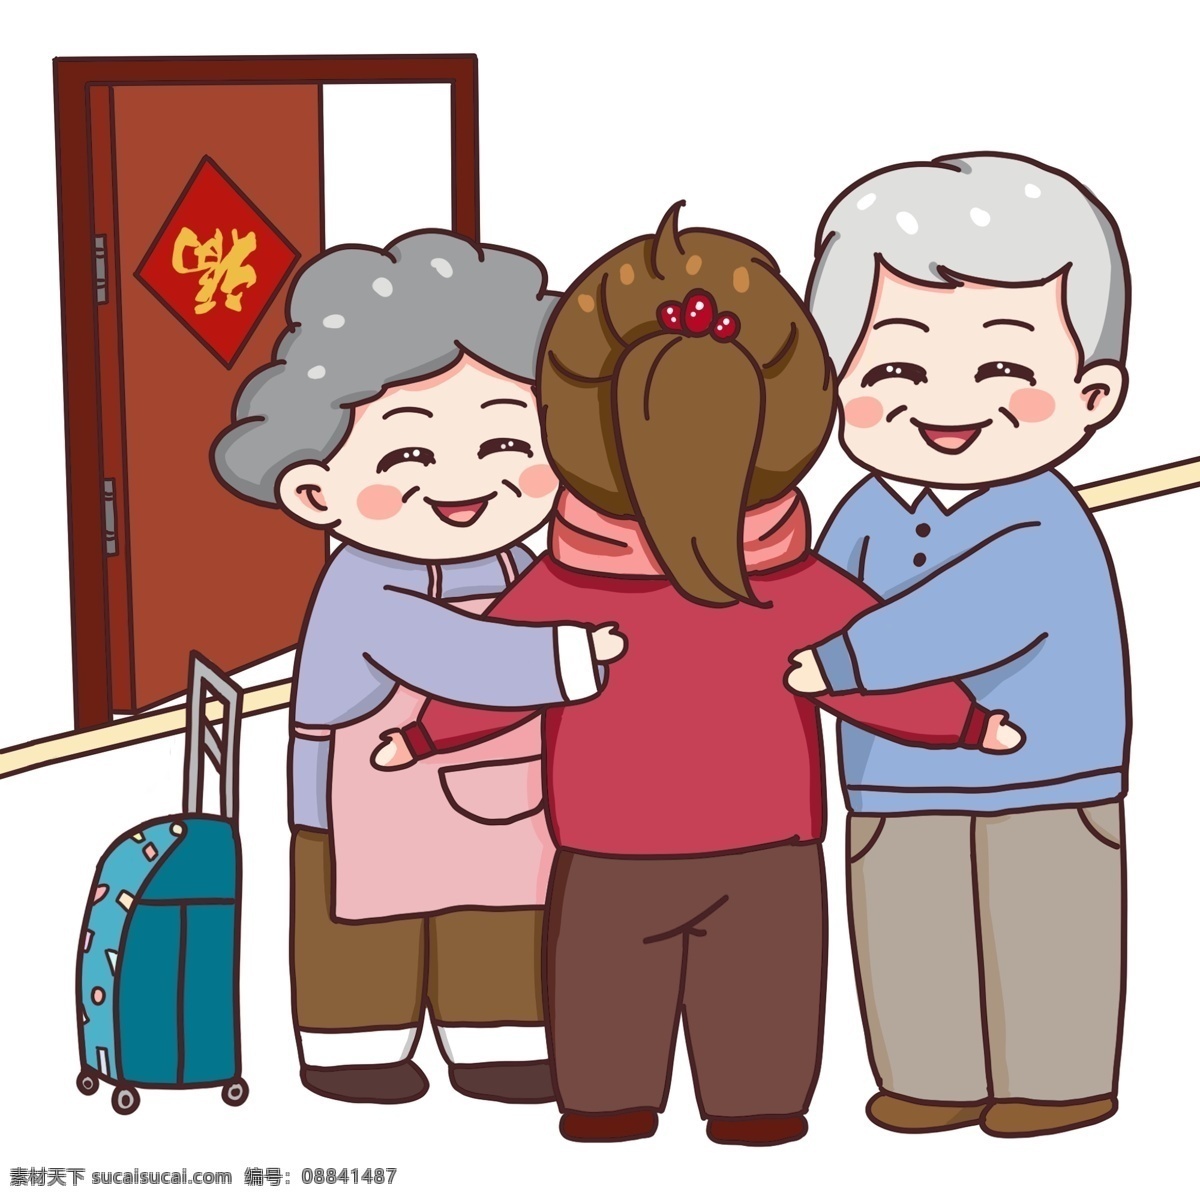 爷爷 奶奶 欢迎 孙女 回家 门 福字 对联 蓝色 行李箱 马尾辫 开心 拥抱 围裙 卡通 手绘